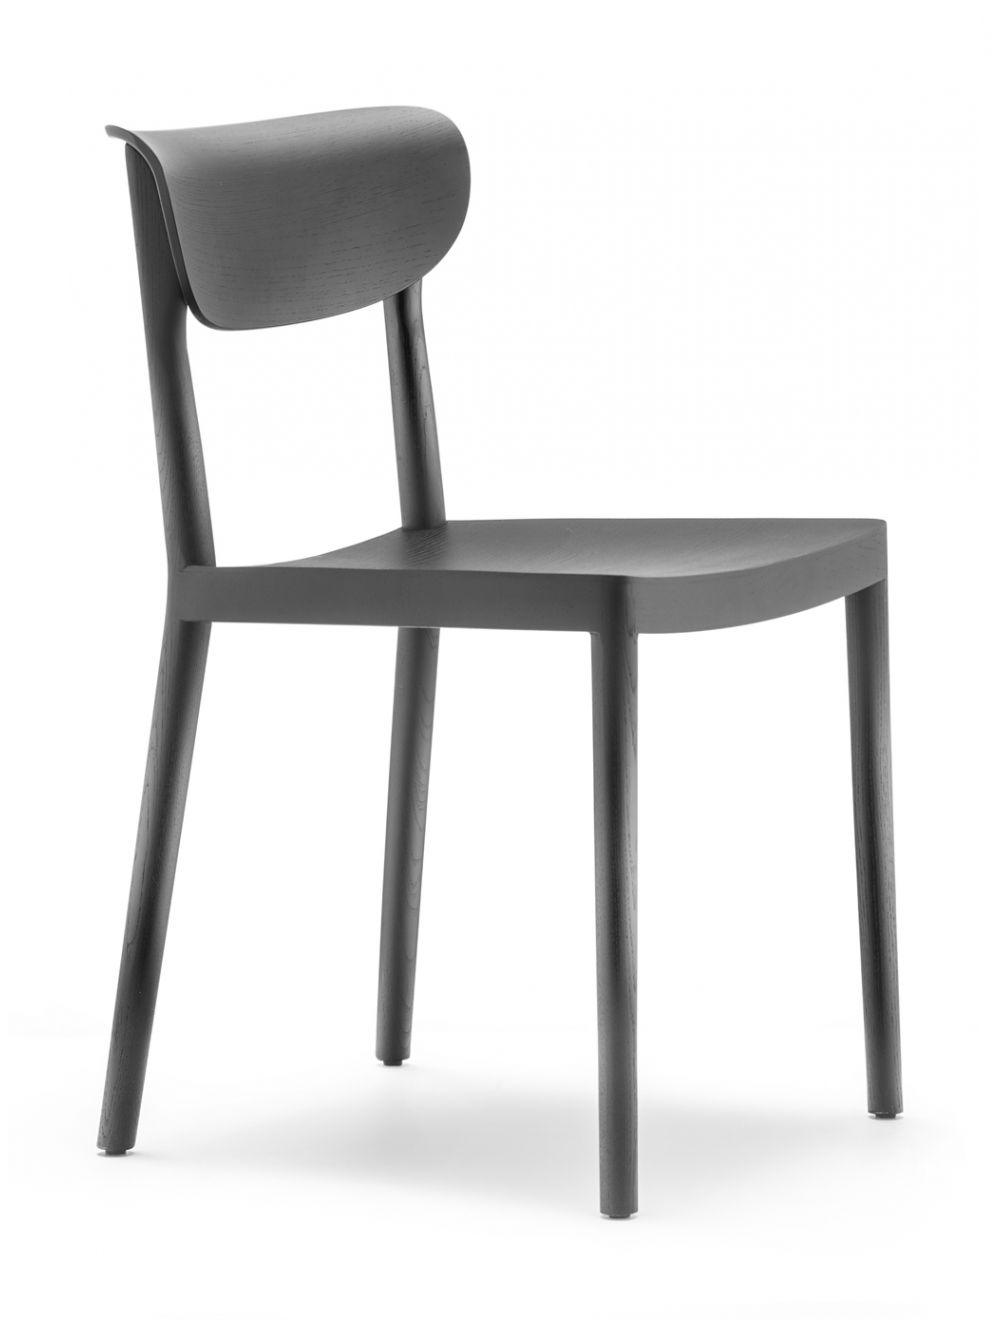 Refrein Onverenigbaar Opstand Tivoli 2800 Pedrali Chair Online Shop | Sedie.Design®